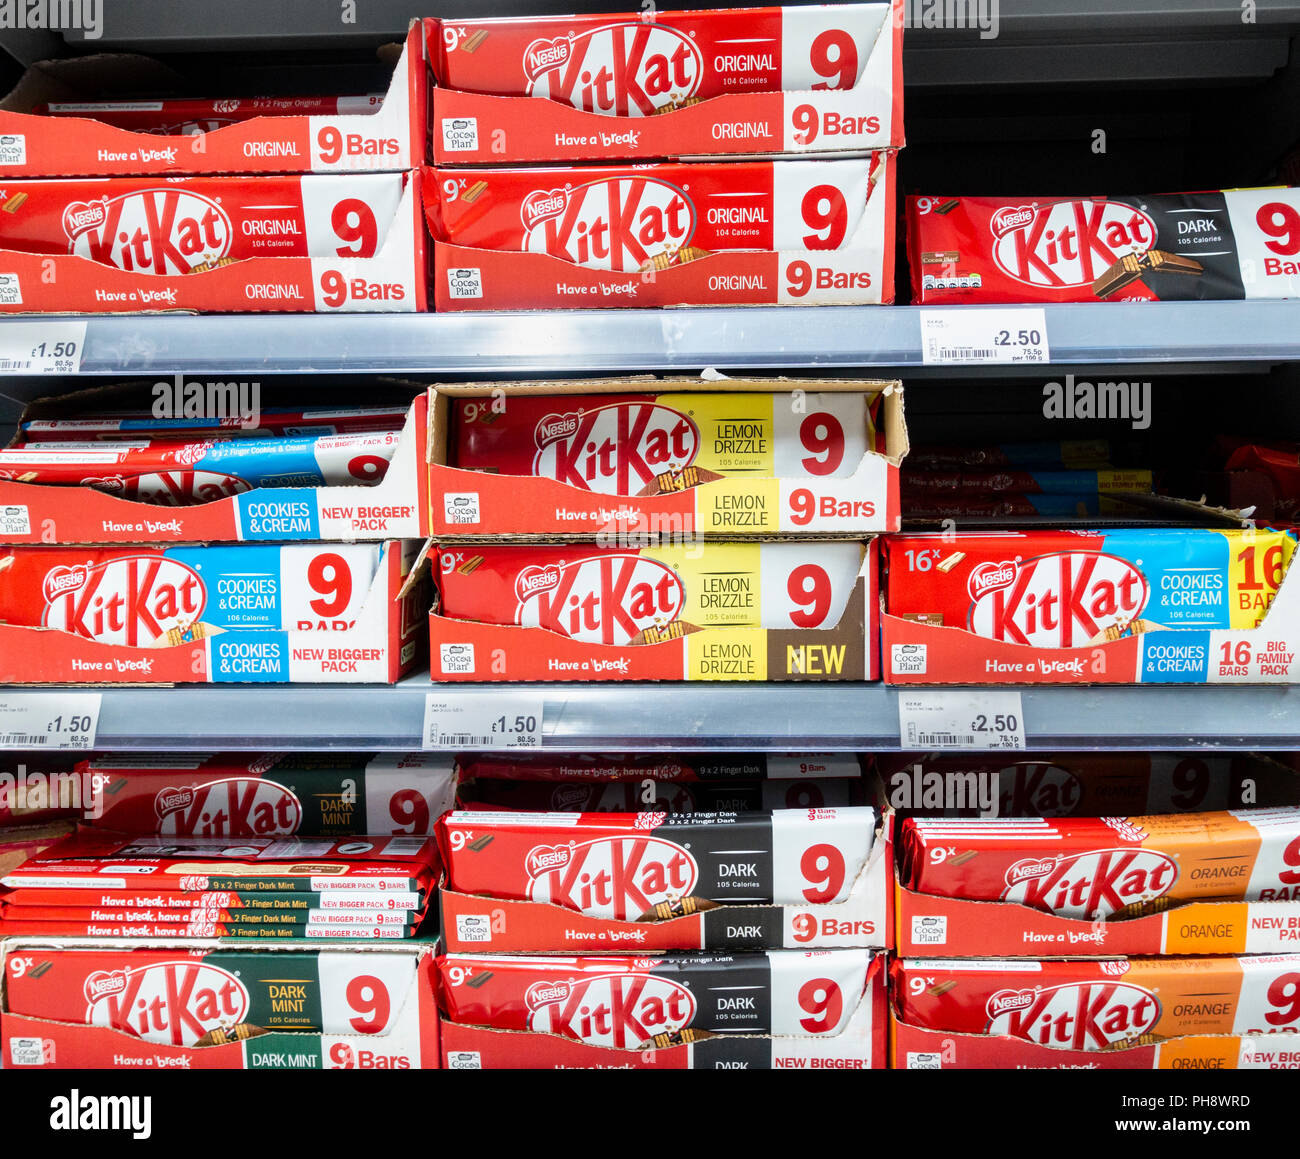 Barras de chocolate KitKat sabor diferente en el supermercado. UK Foto de stock